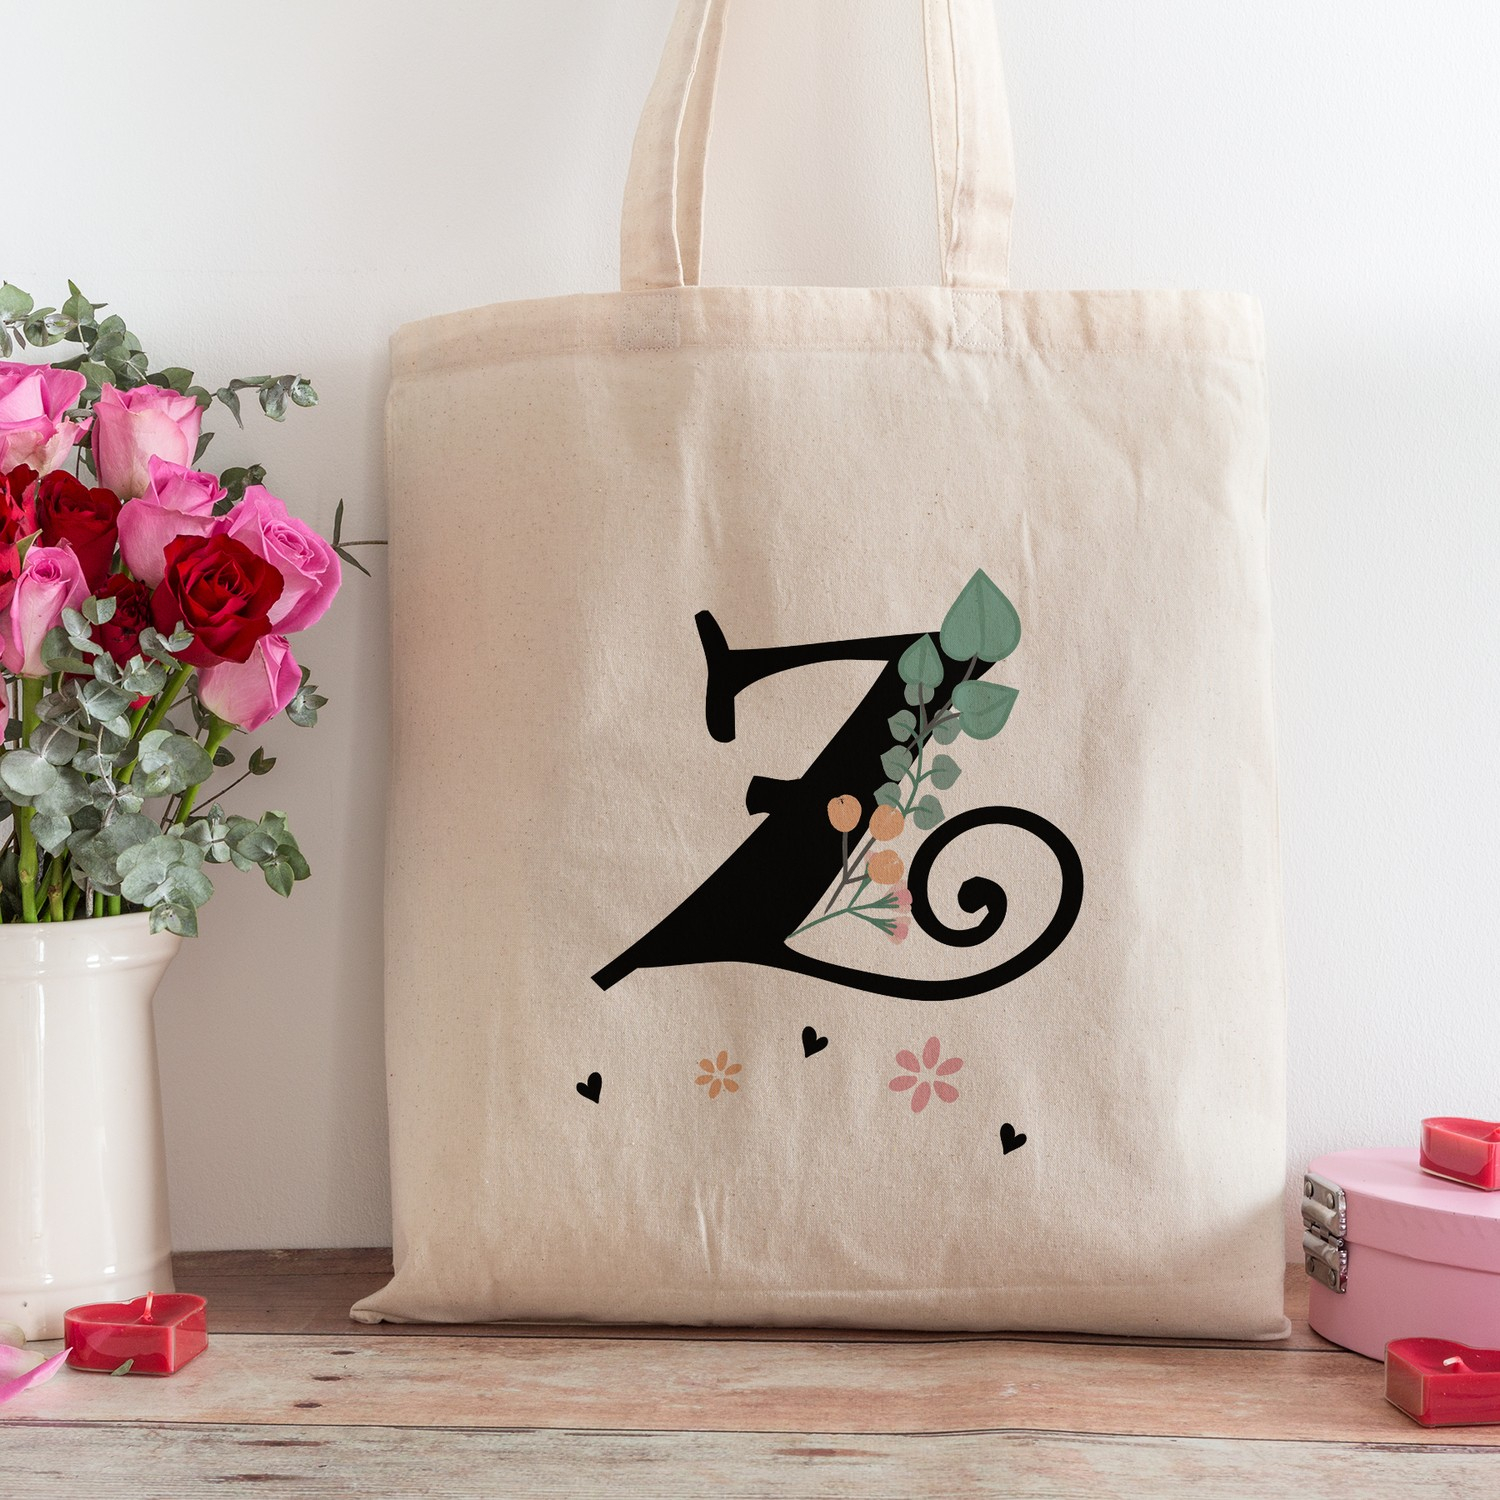 Пляжная сумка для покупок с дизайном буквы Z из электронного магазина подарков